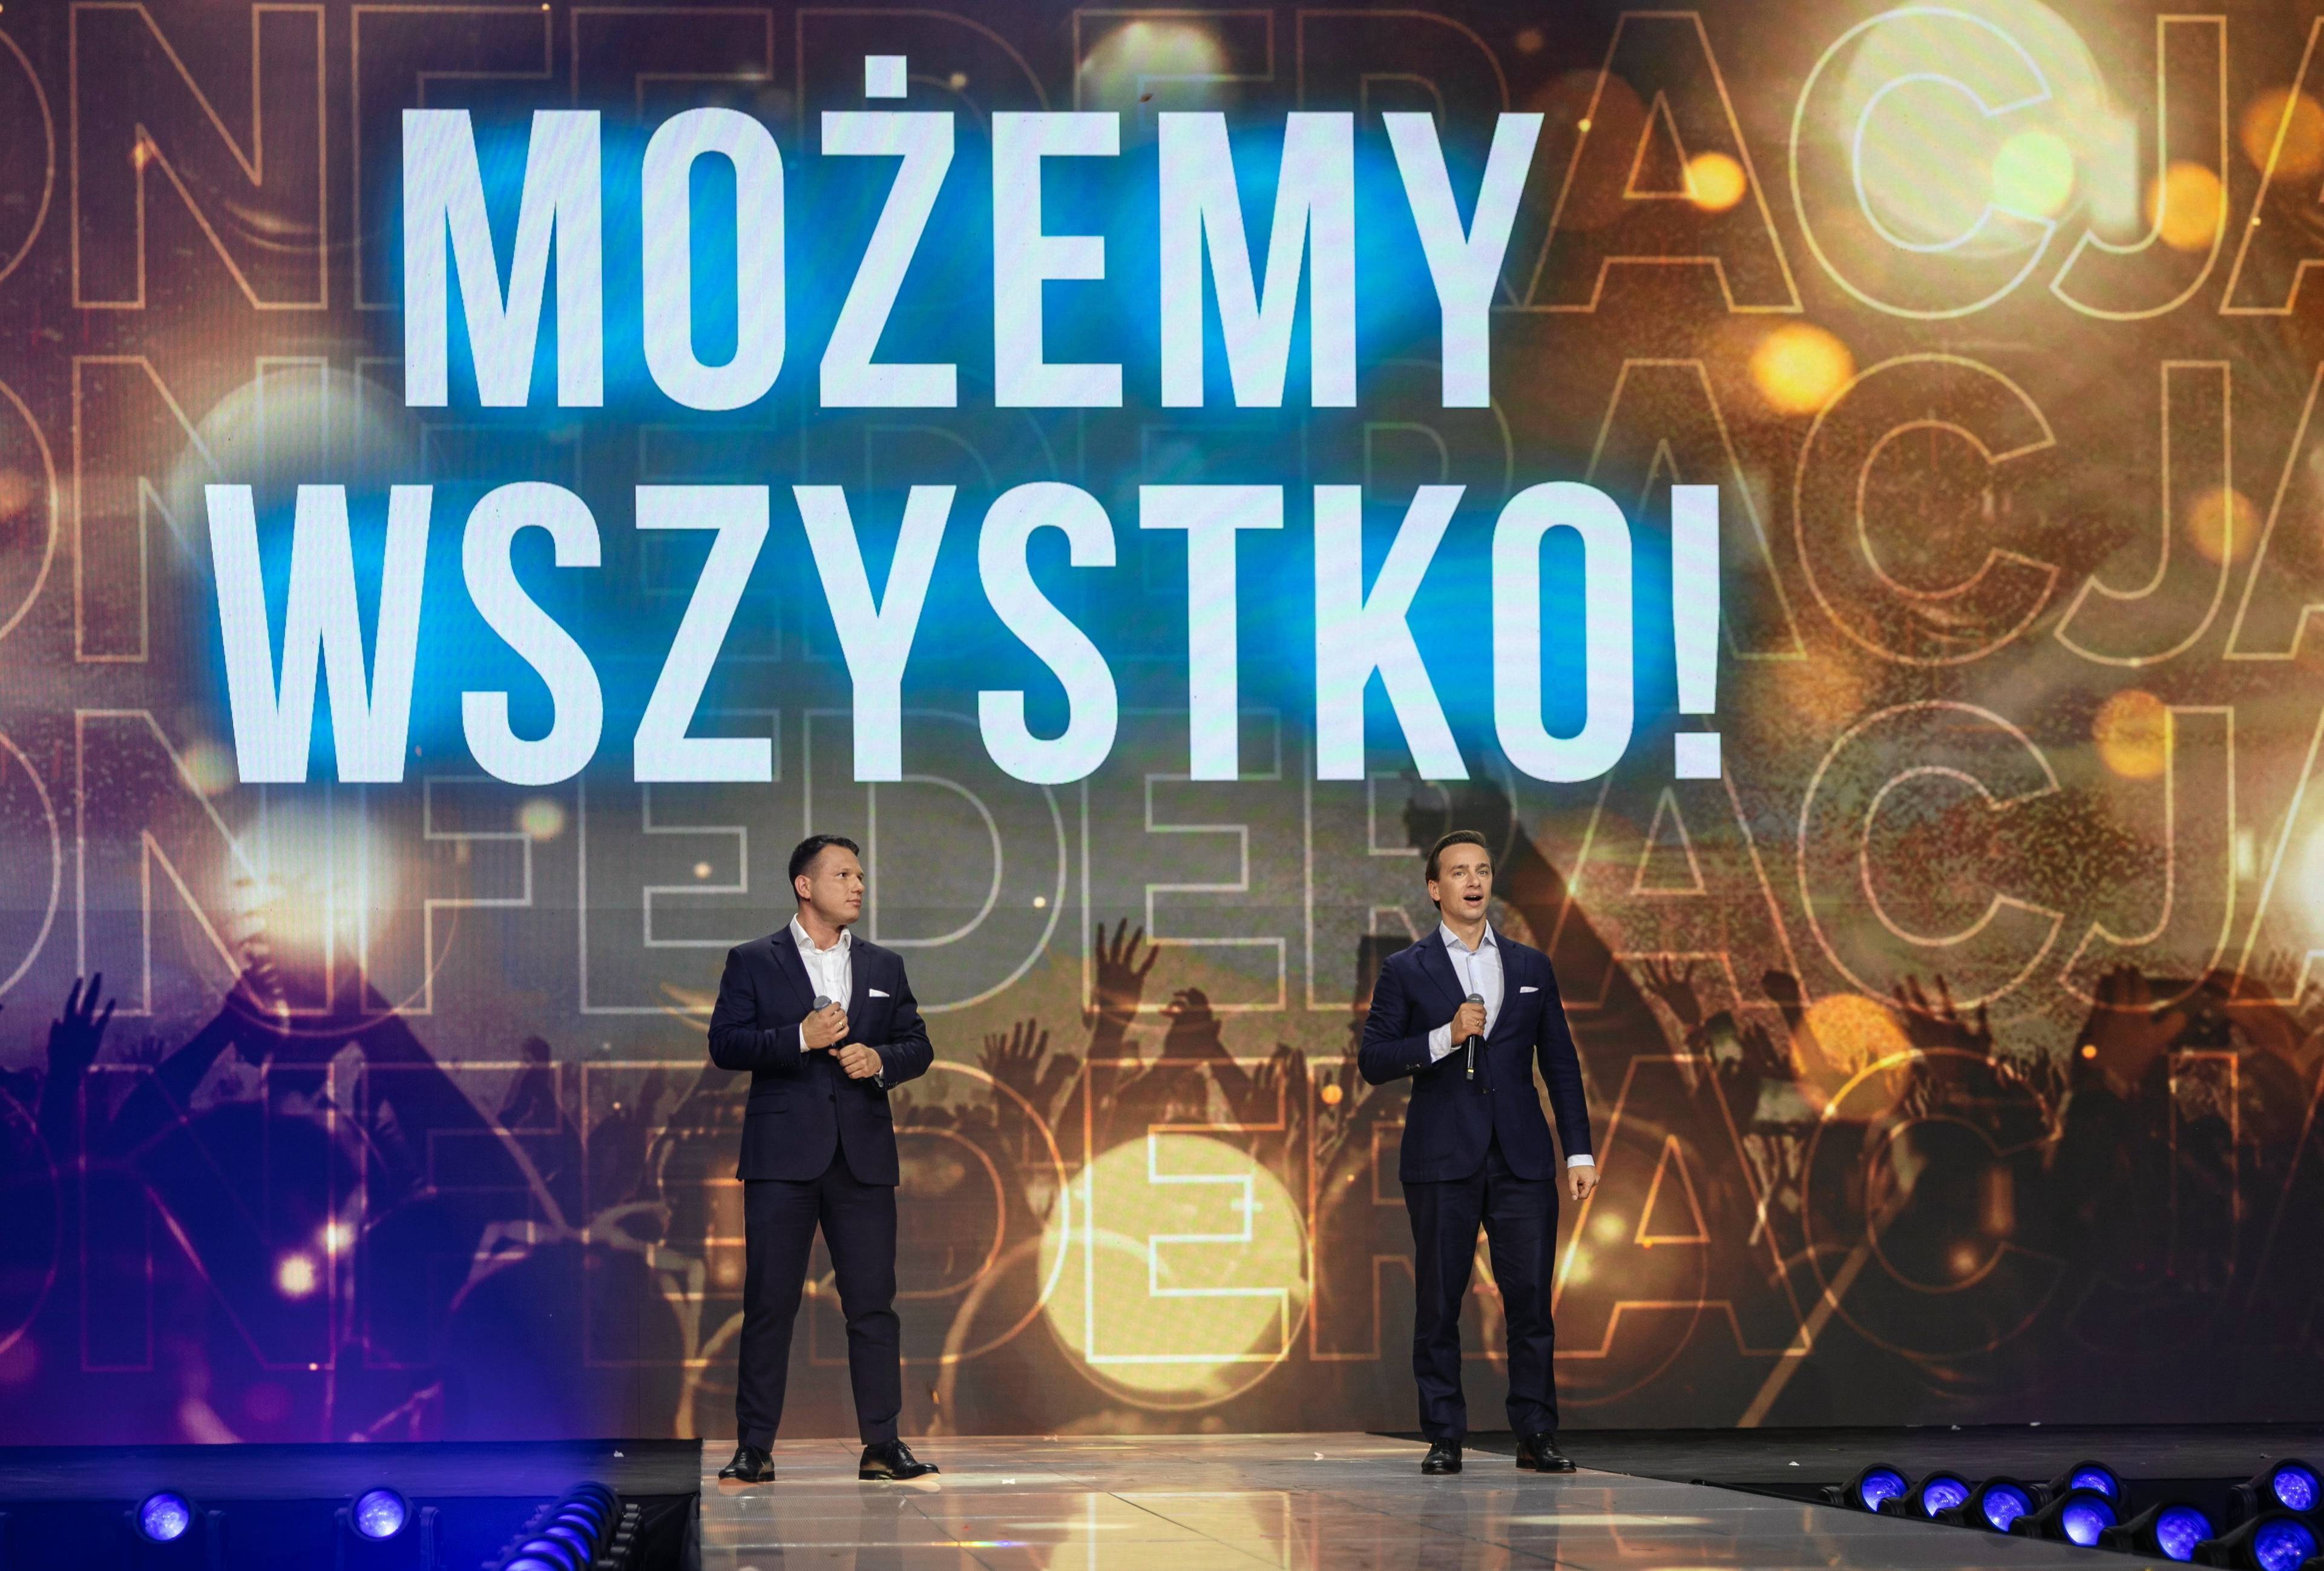 Konwencja Konfederacji. Na zdjęciu liderzy Krzysztof Bosak i Sławomir Mentzen na tle napisu "Możemy wszystko"